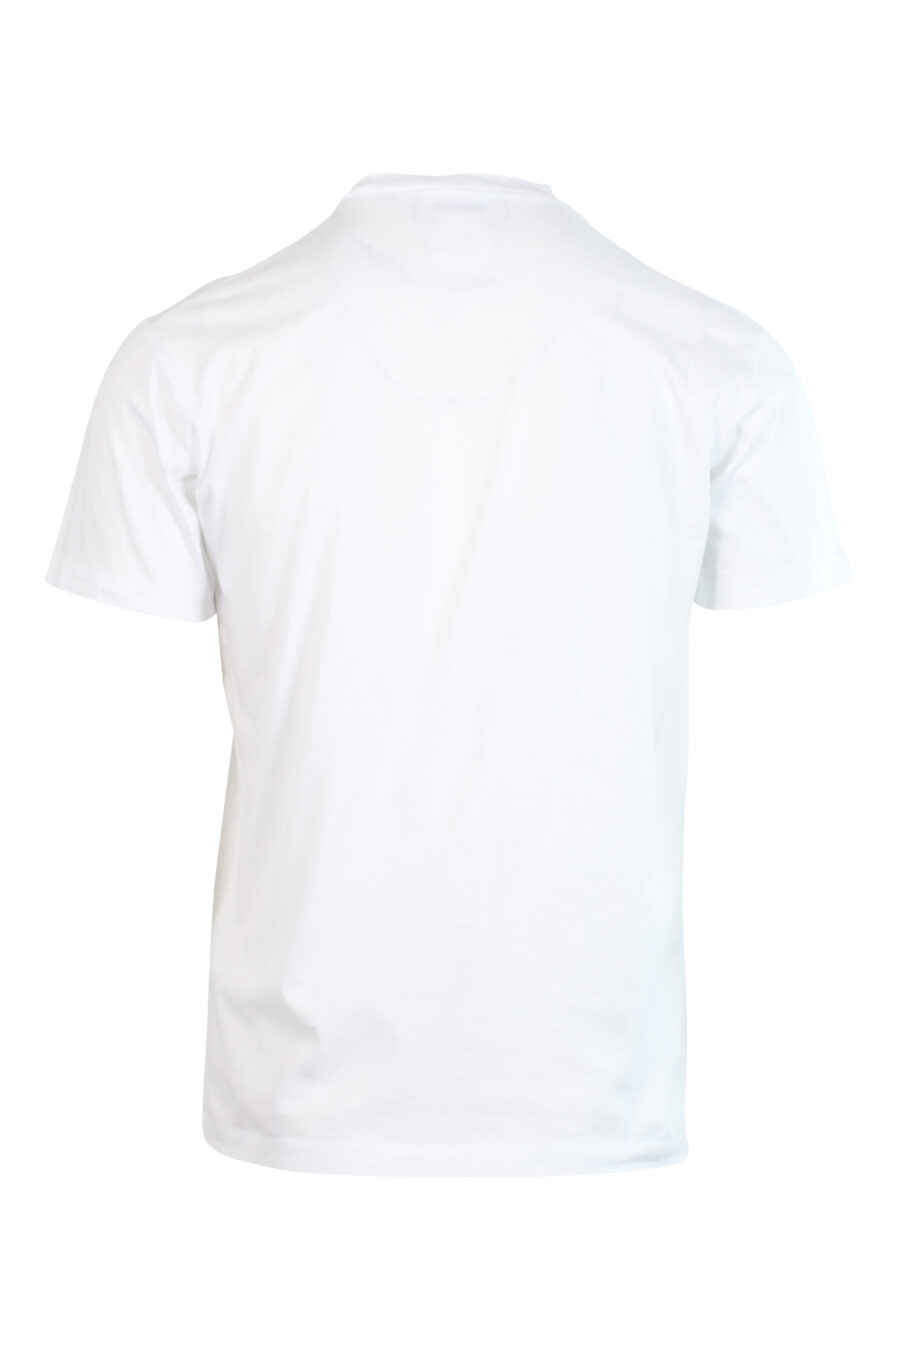 Camiseta blanca con logo monocromático - 8052134946381 2